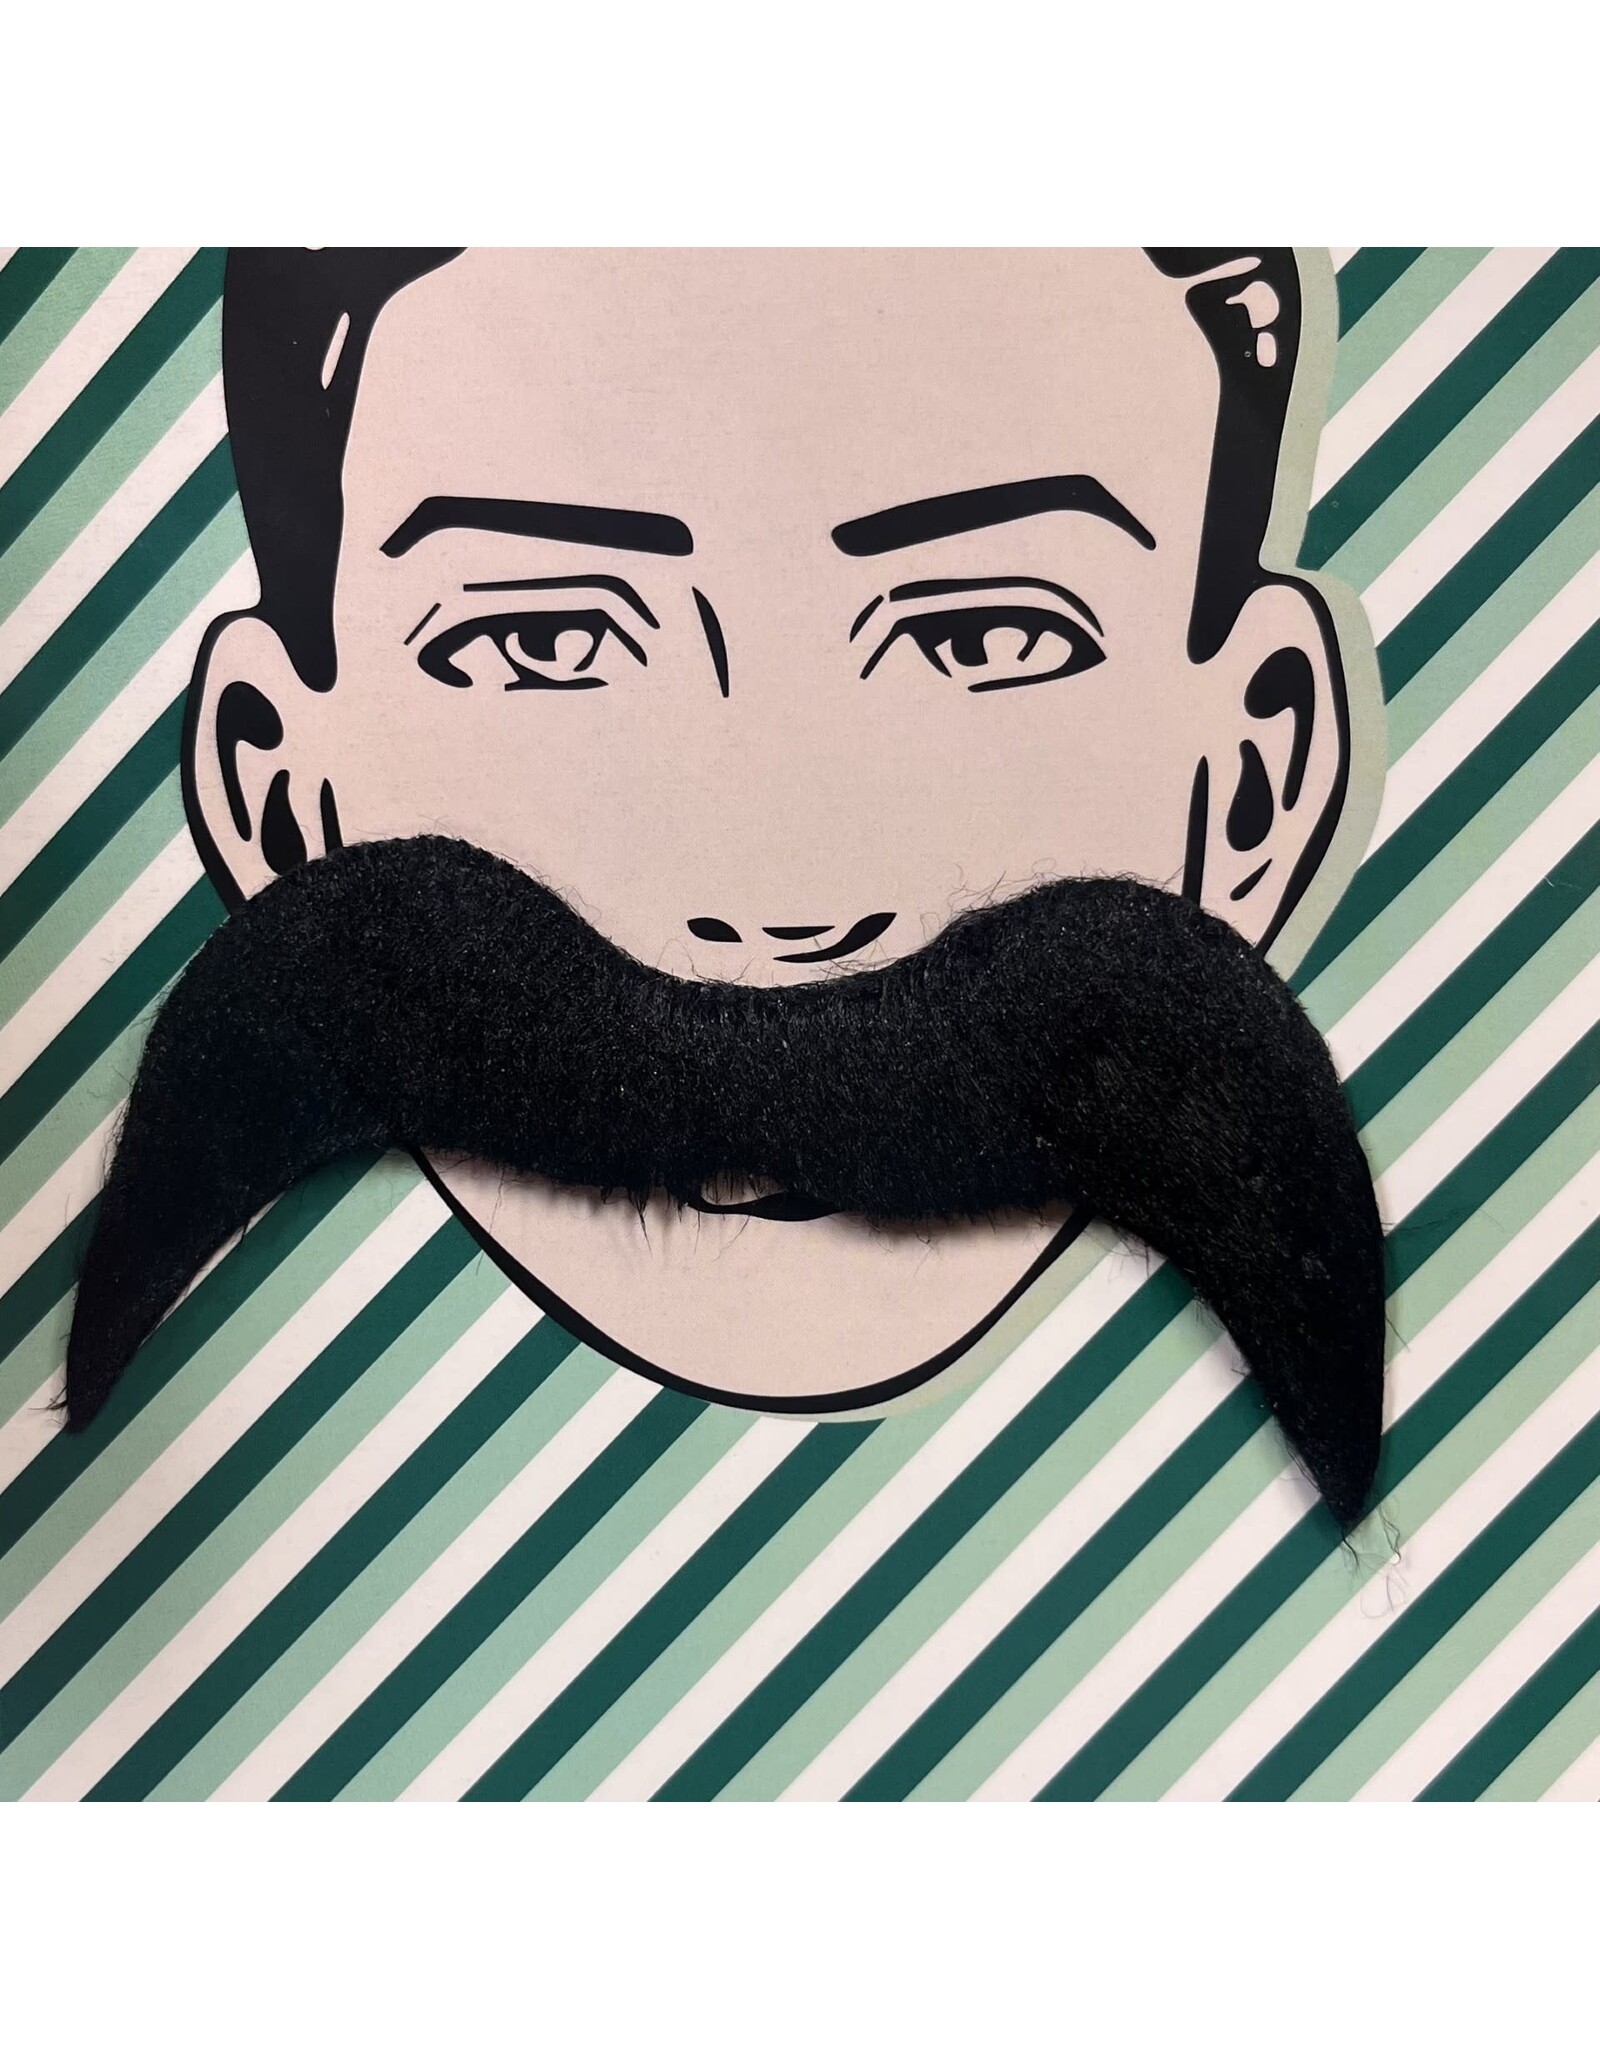 HM Smallwares Groovy 60's Moustache